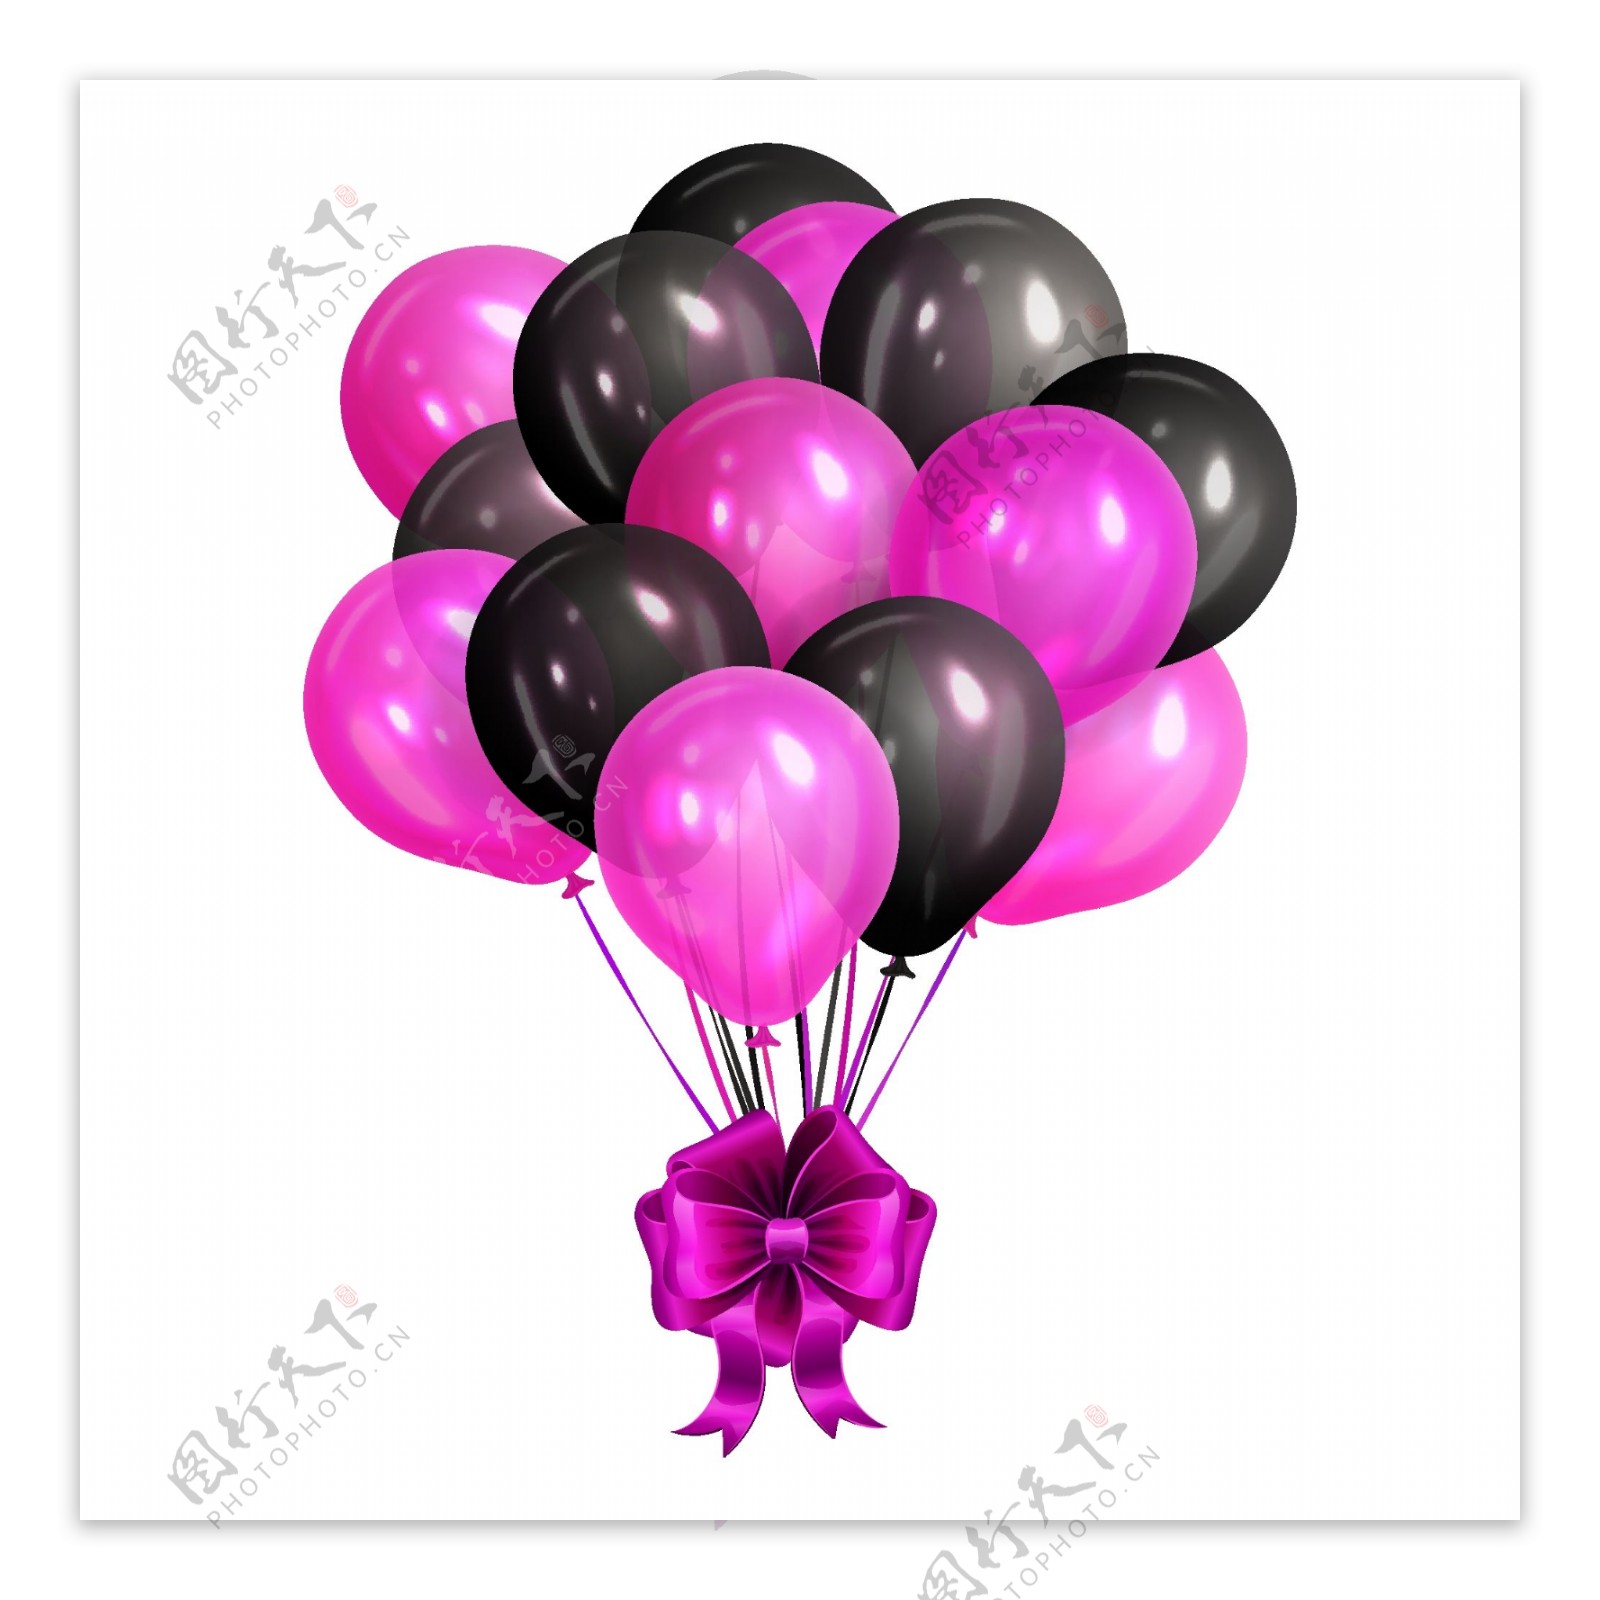 精美紫色气球束矢量素材